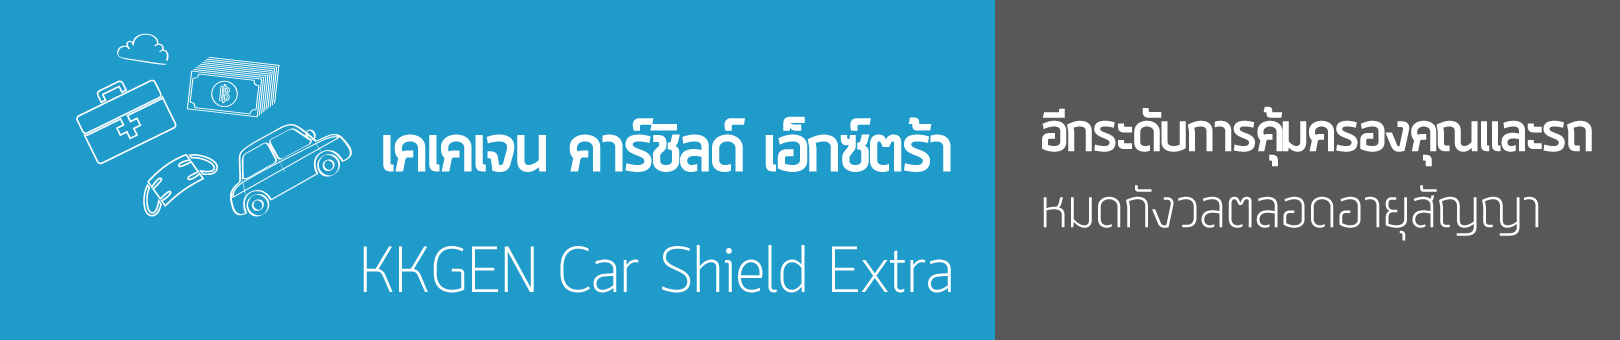 kkgen-car-shield-extra-product-banner